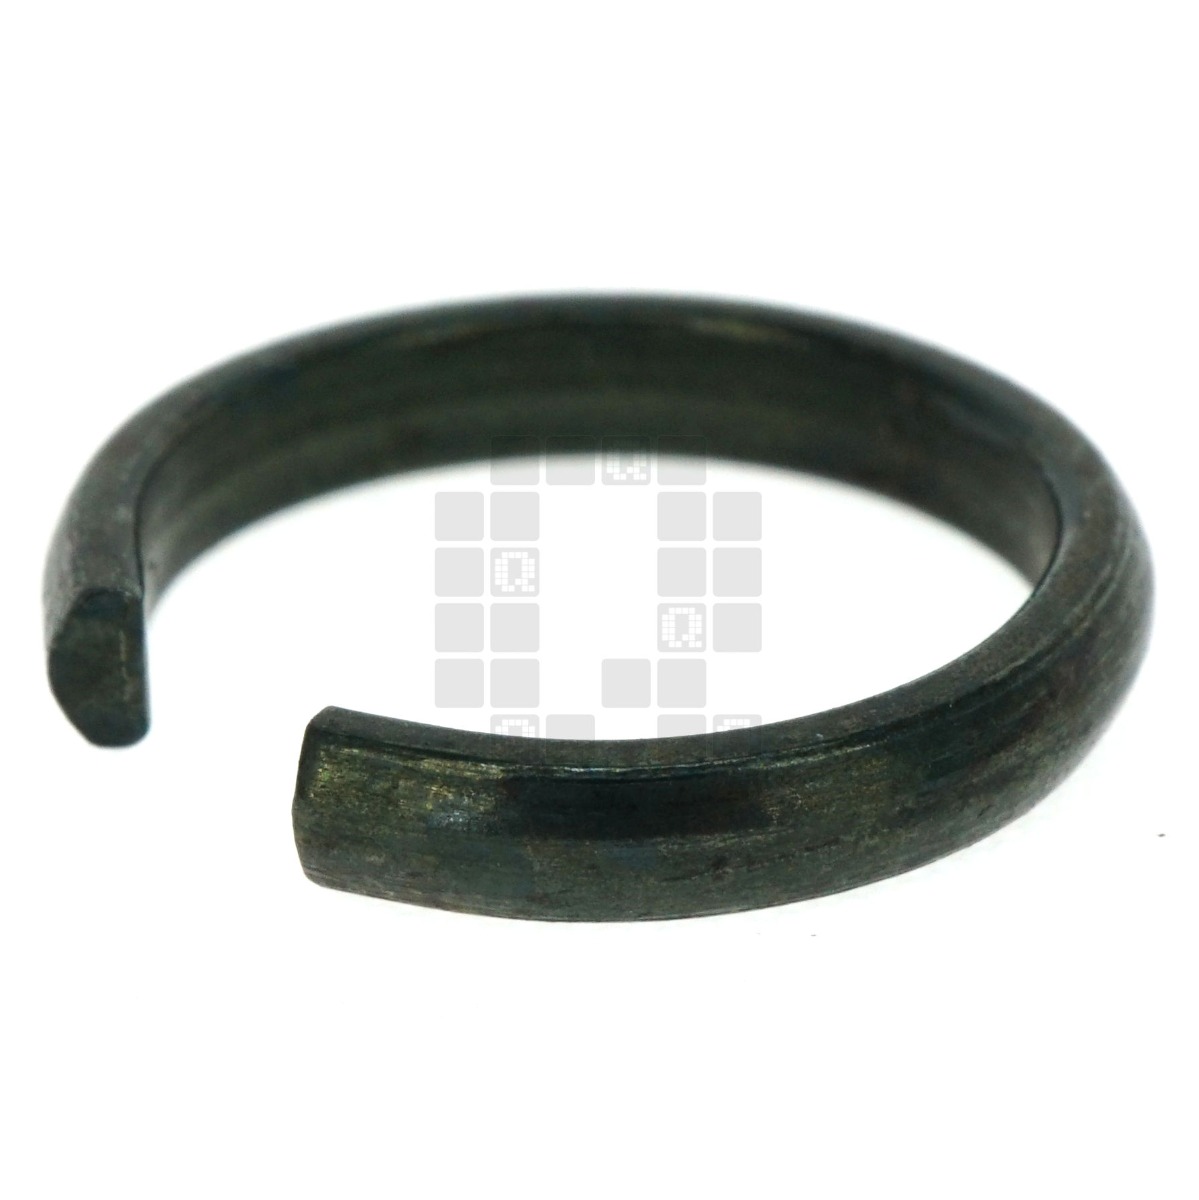 Dewalt/Porter-Cable/Black & Decker/Snap-On 086947-00 Spring Ring